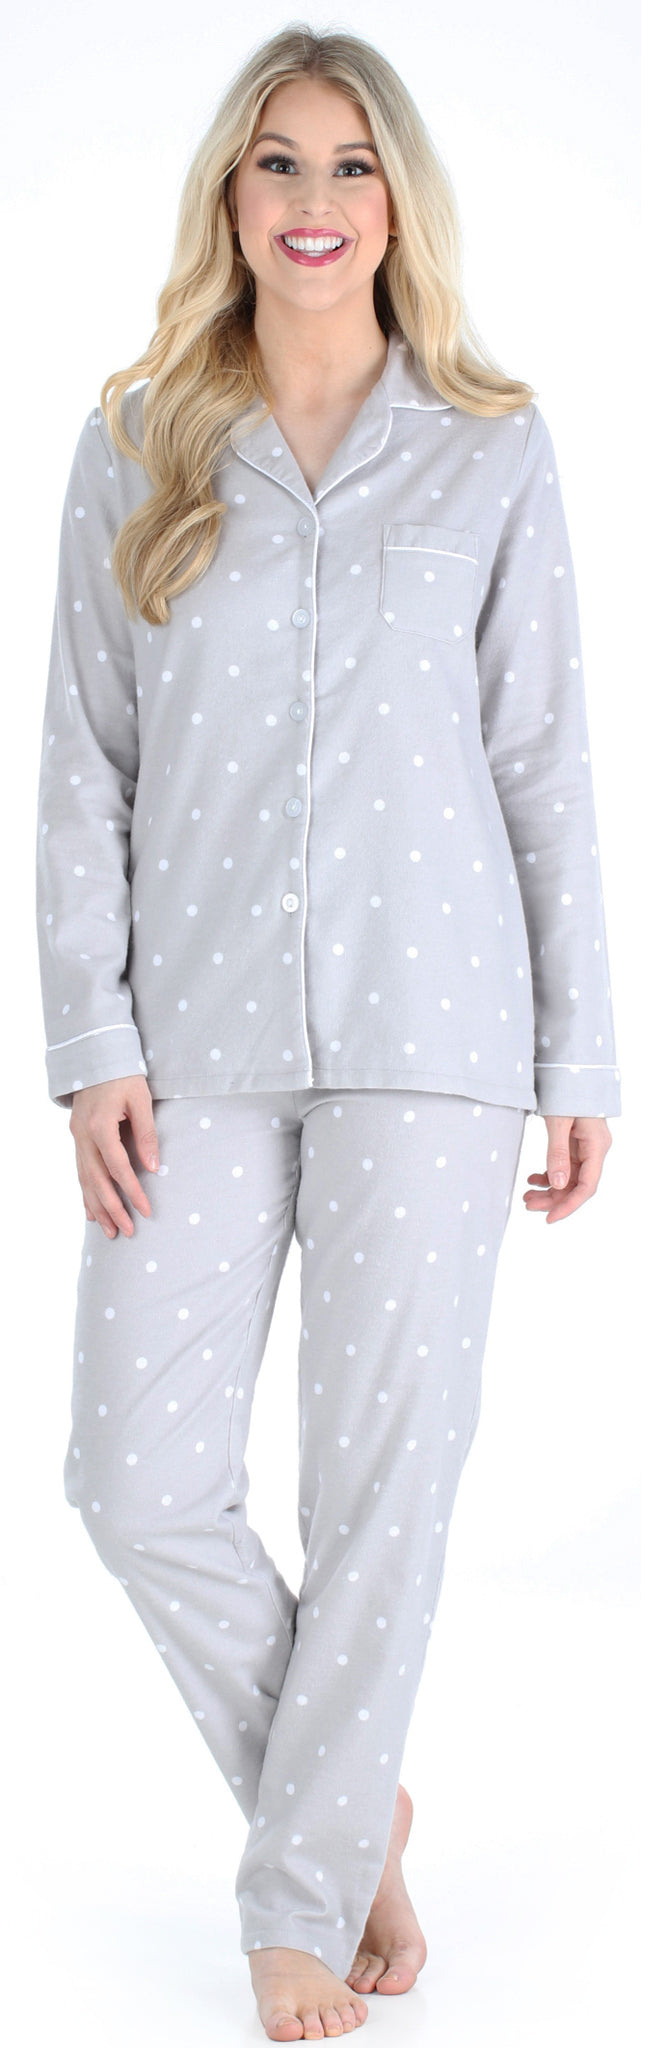 PajamaMania Women’s Cotton Flannel Long Sleeve Pajamas PJ Set